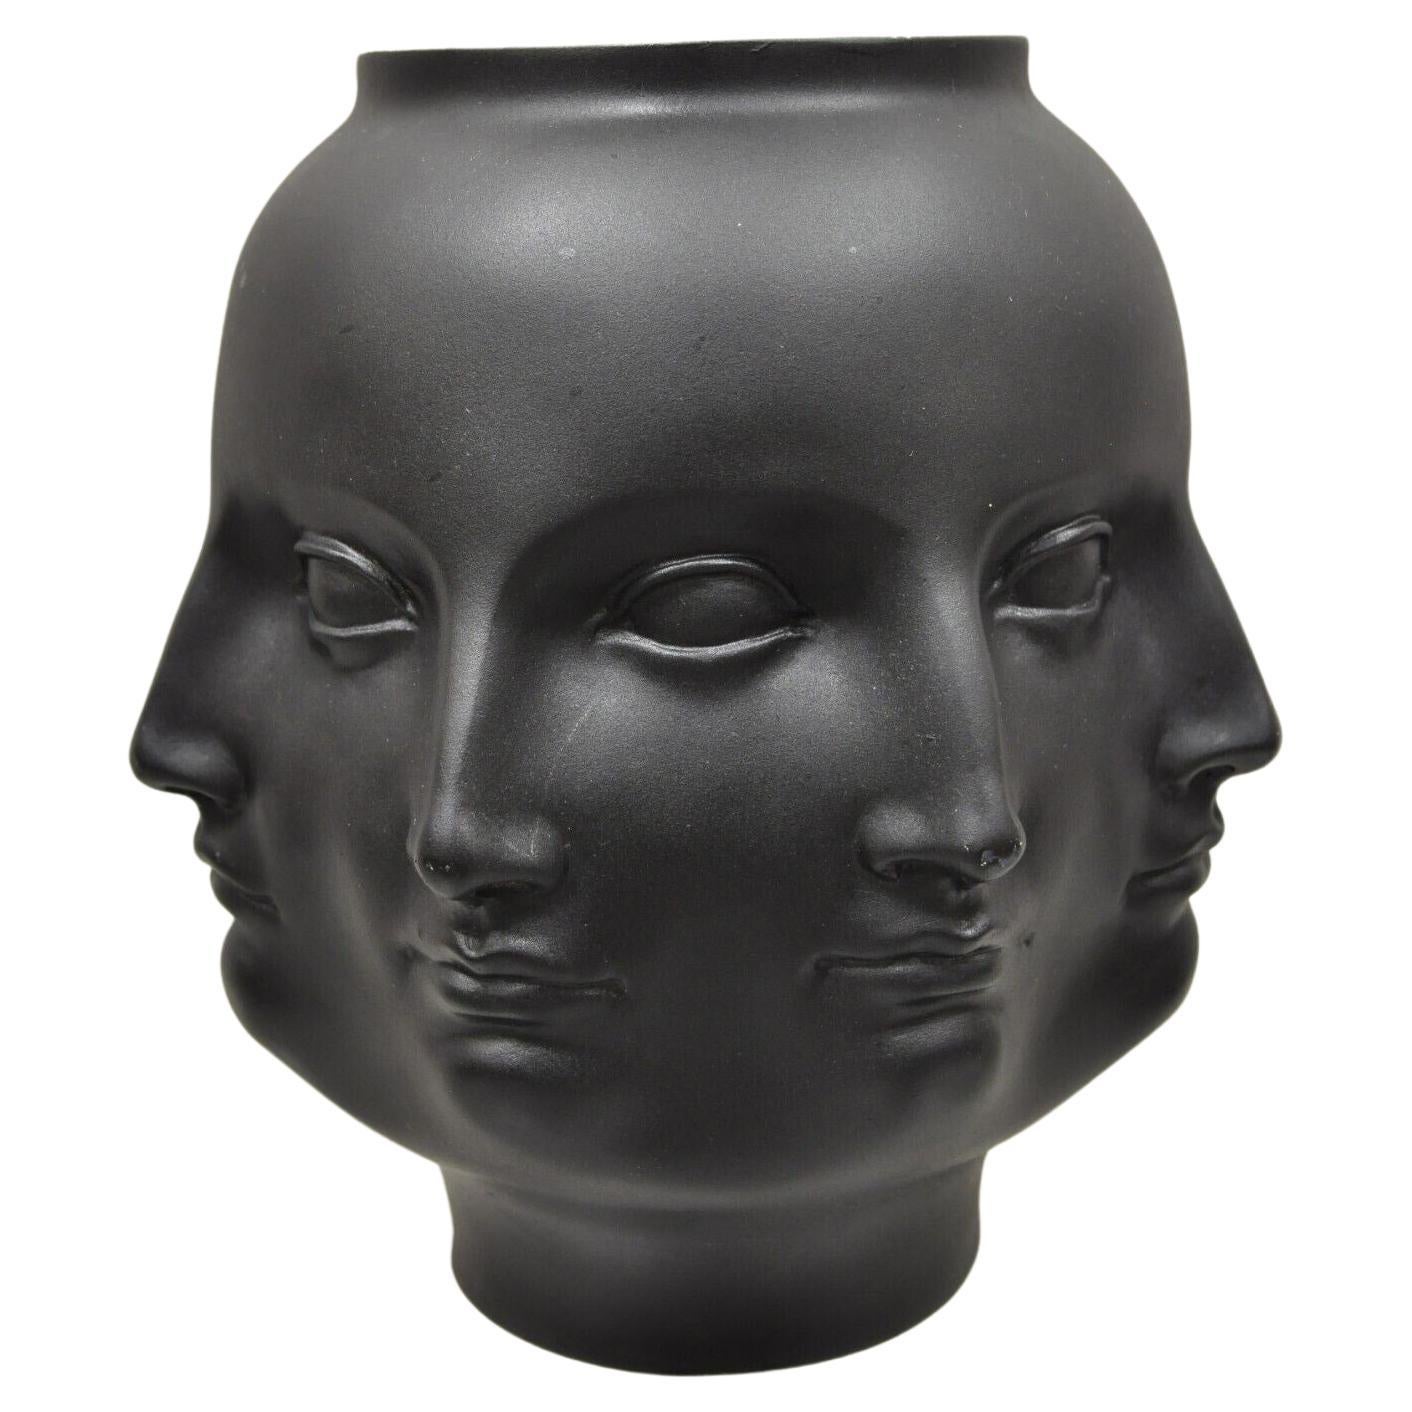 TMS 2005 Fornasetti Style Black Vitruvian Perpetual Face Ceramic Vase